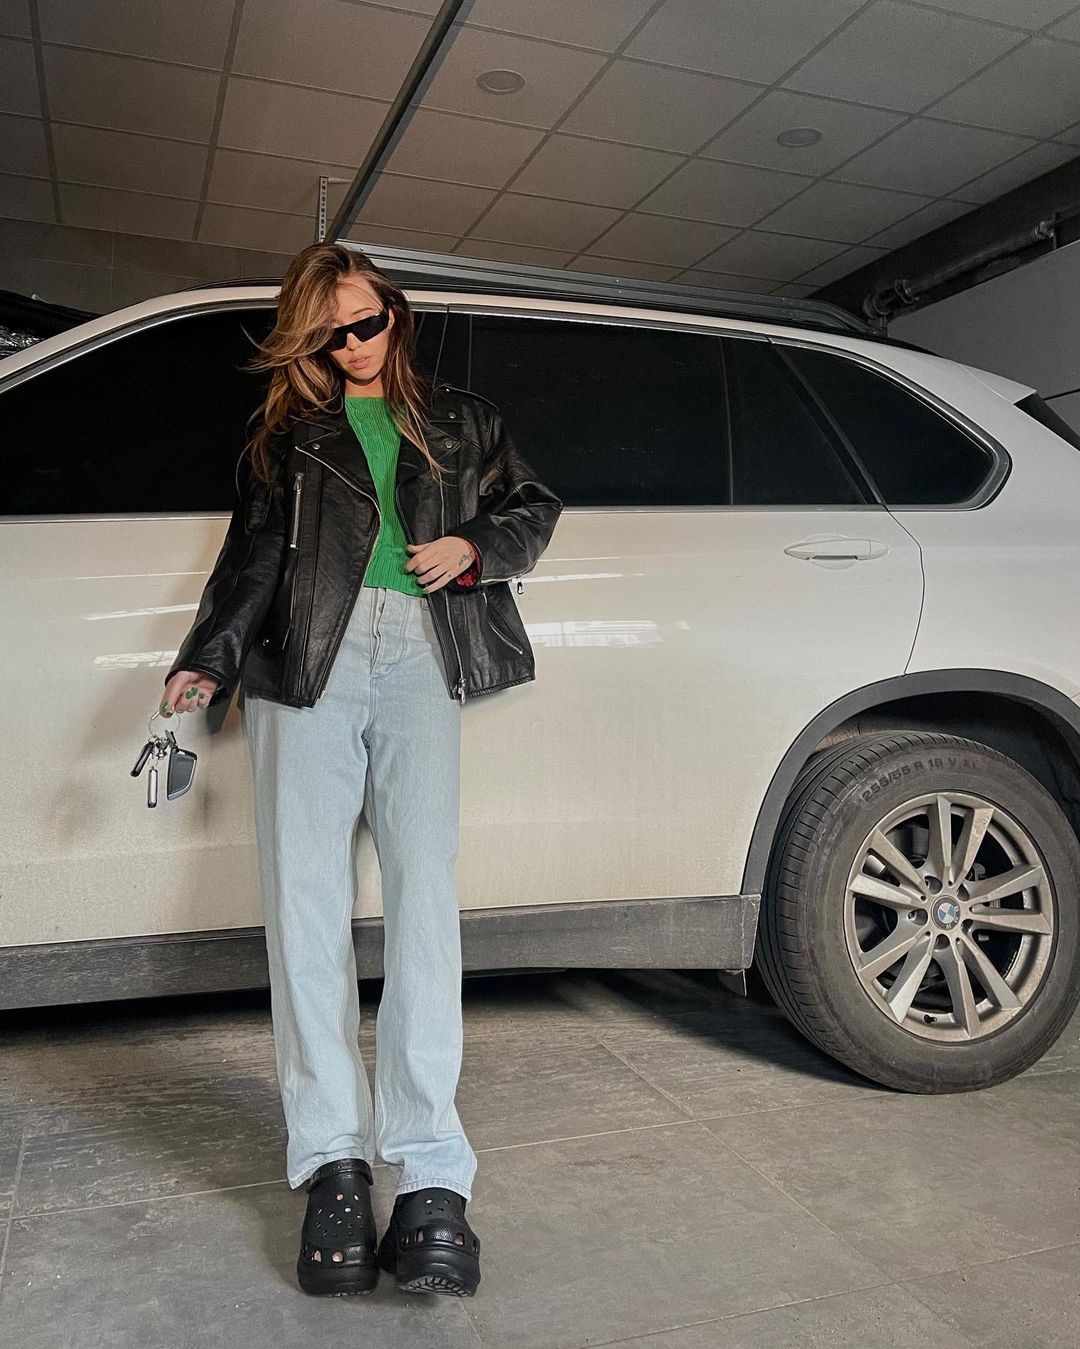 Надя Дорофєєва їздить на розкішній Tesla: фото салону авто